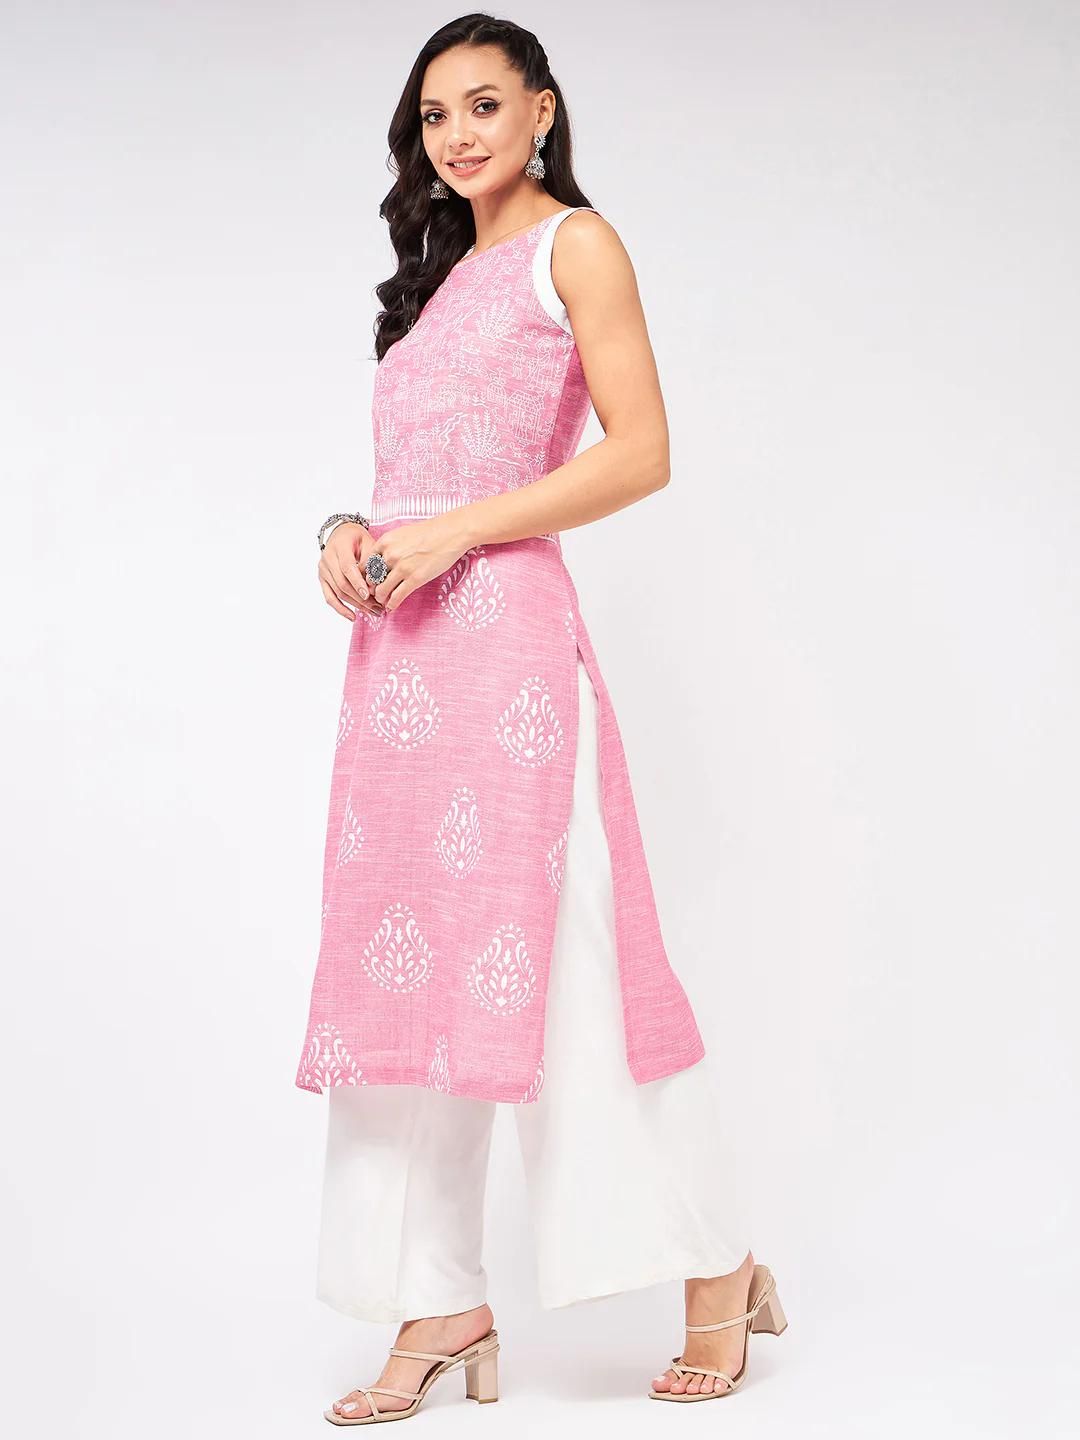 PANNKH Sleeveless Printed Chambray Pink Kurta